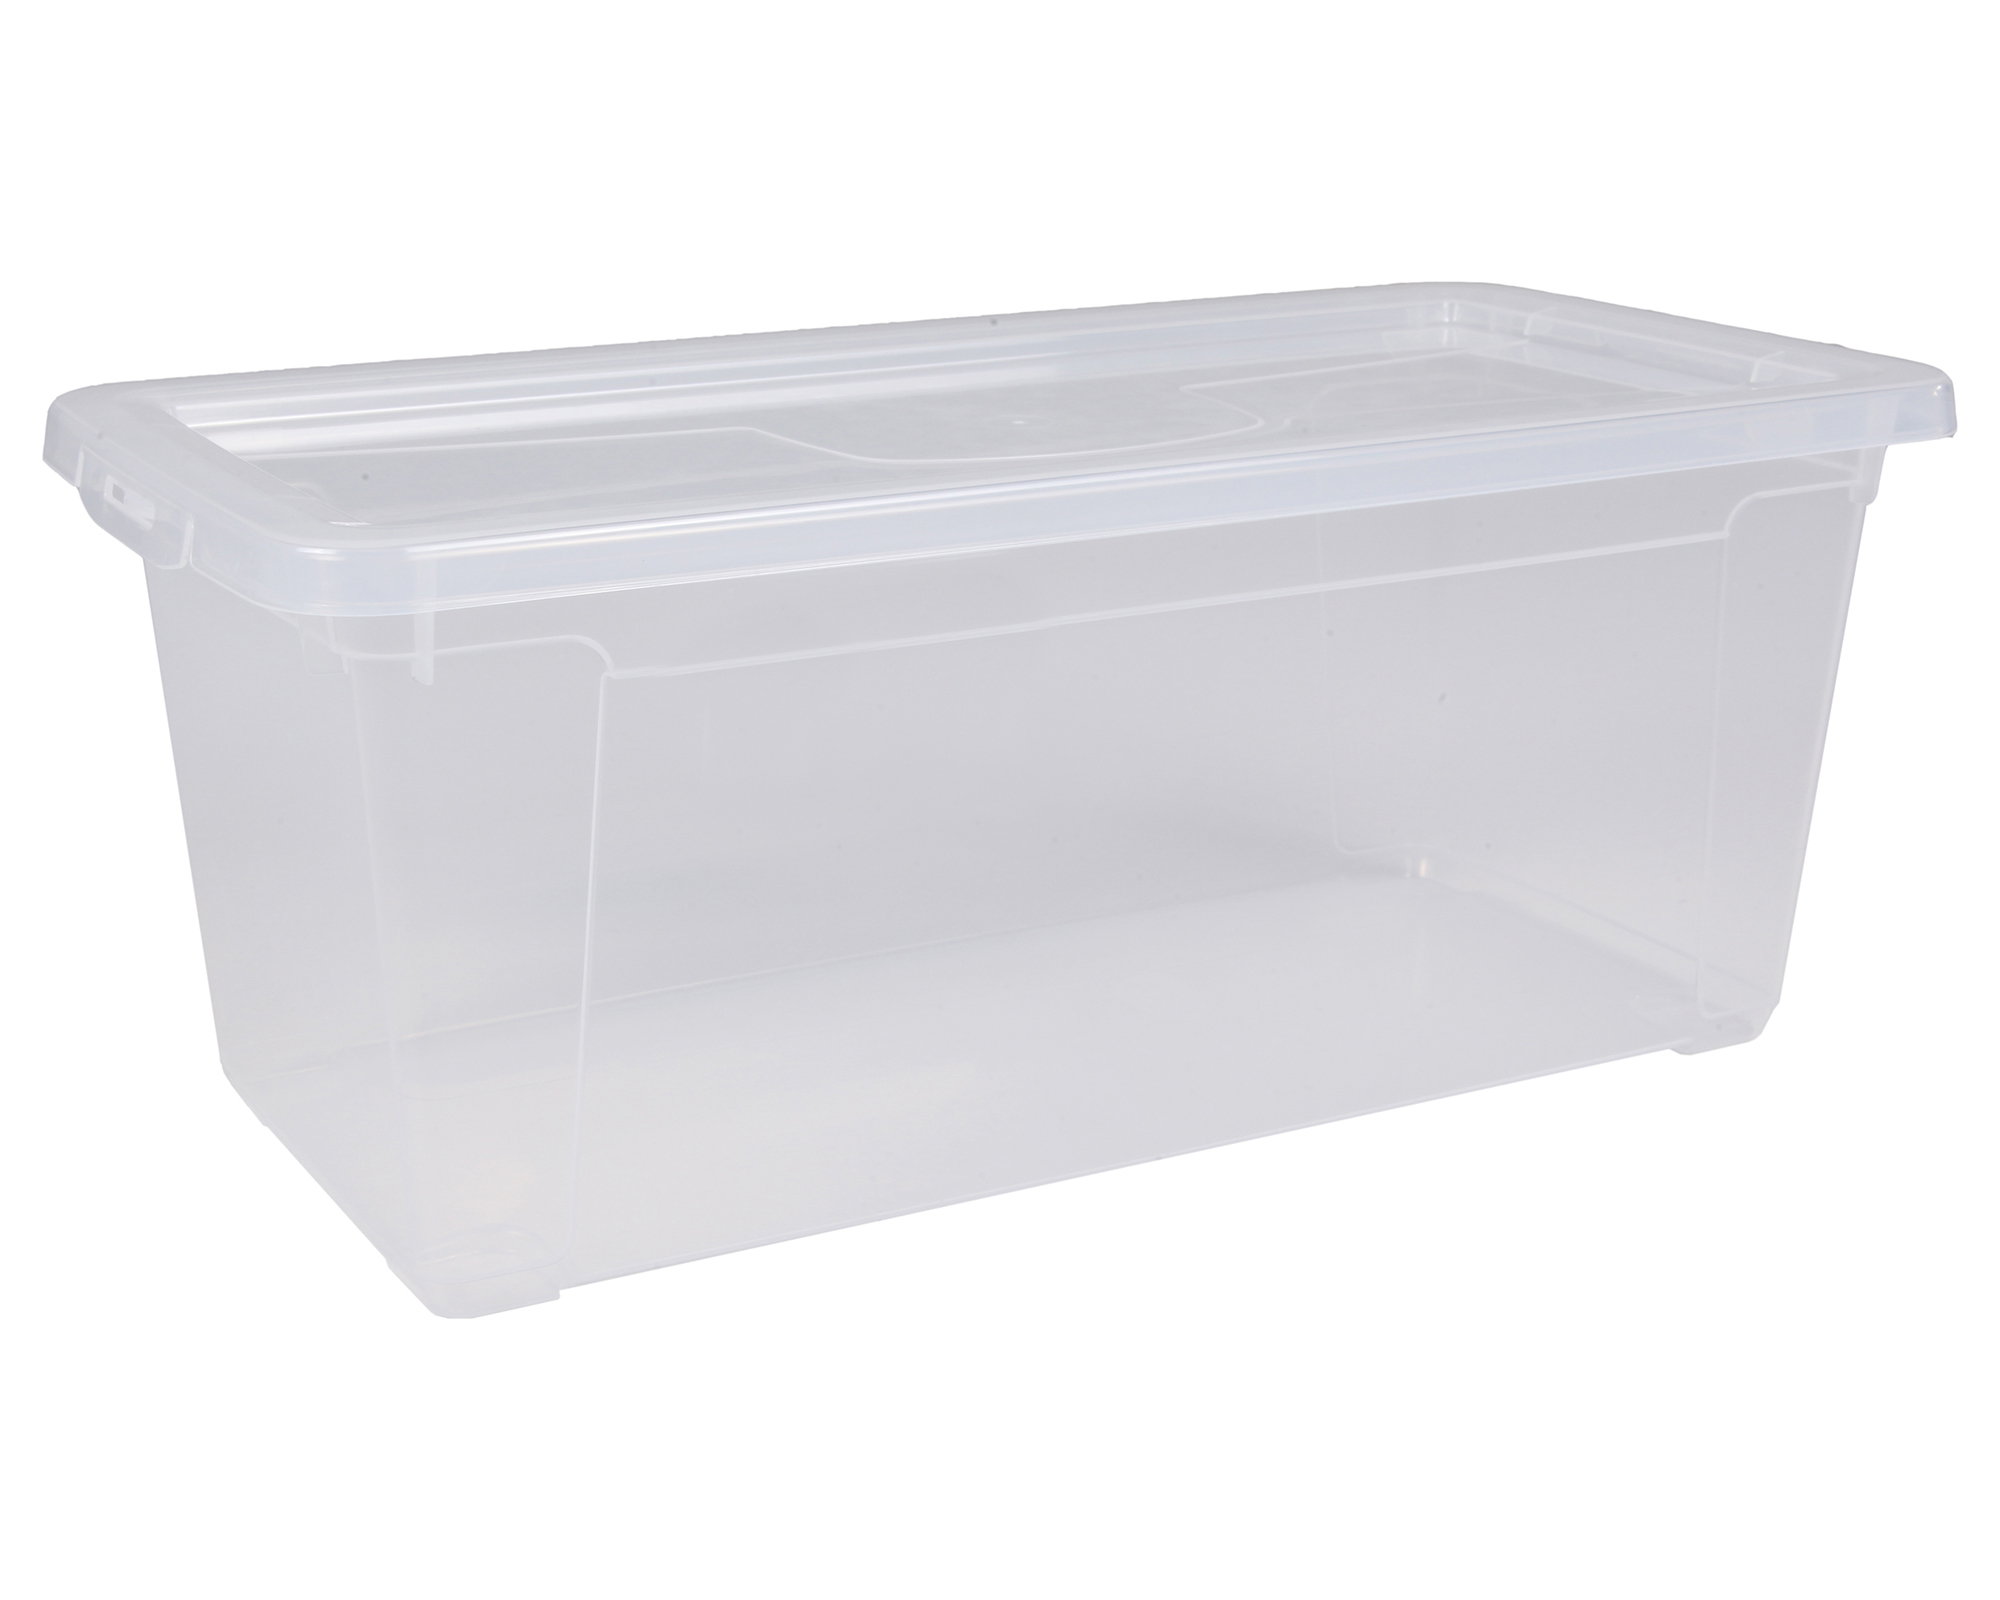 Aufbewahrungsbox Sammelbox Lagerbox Gerätebox Stapelbox Unterbettbox Easy L 2 x 